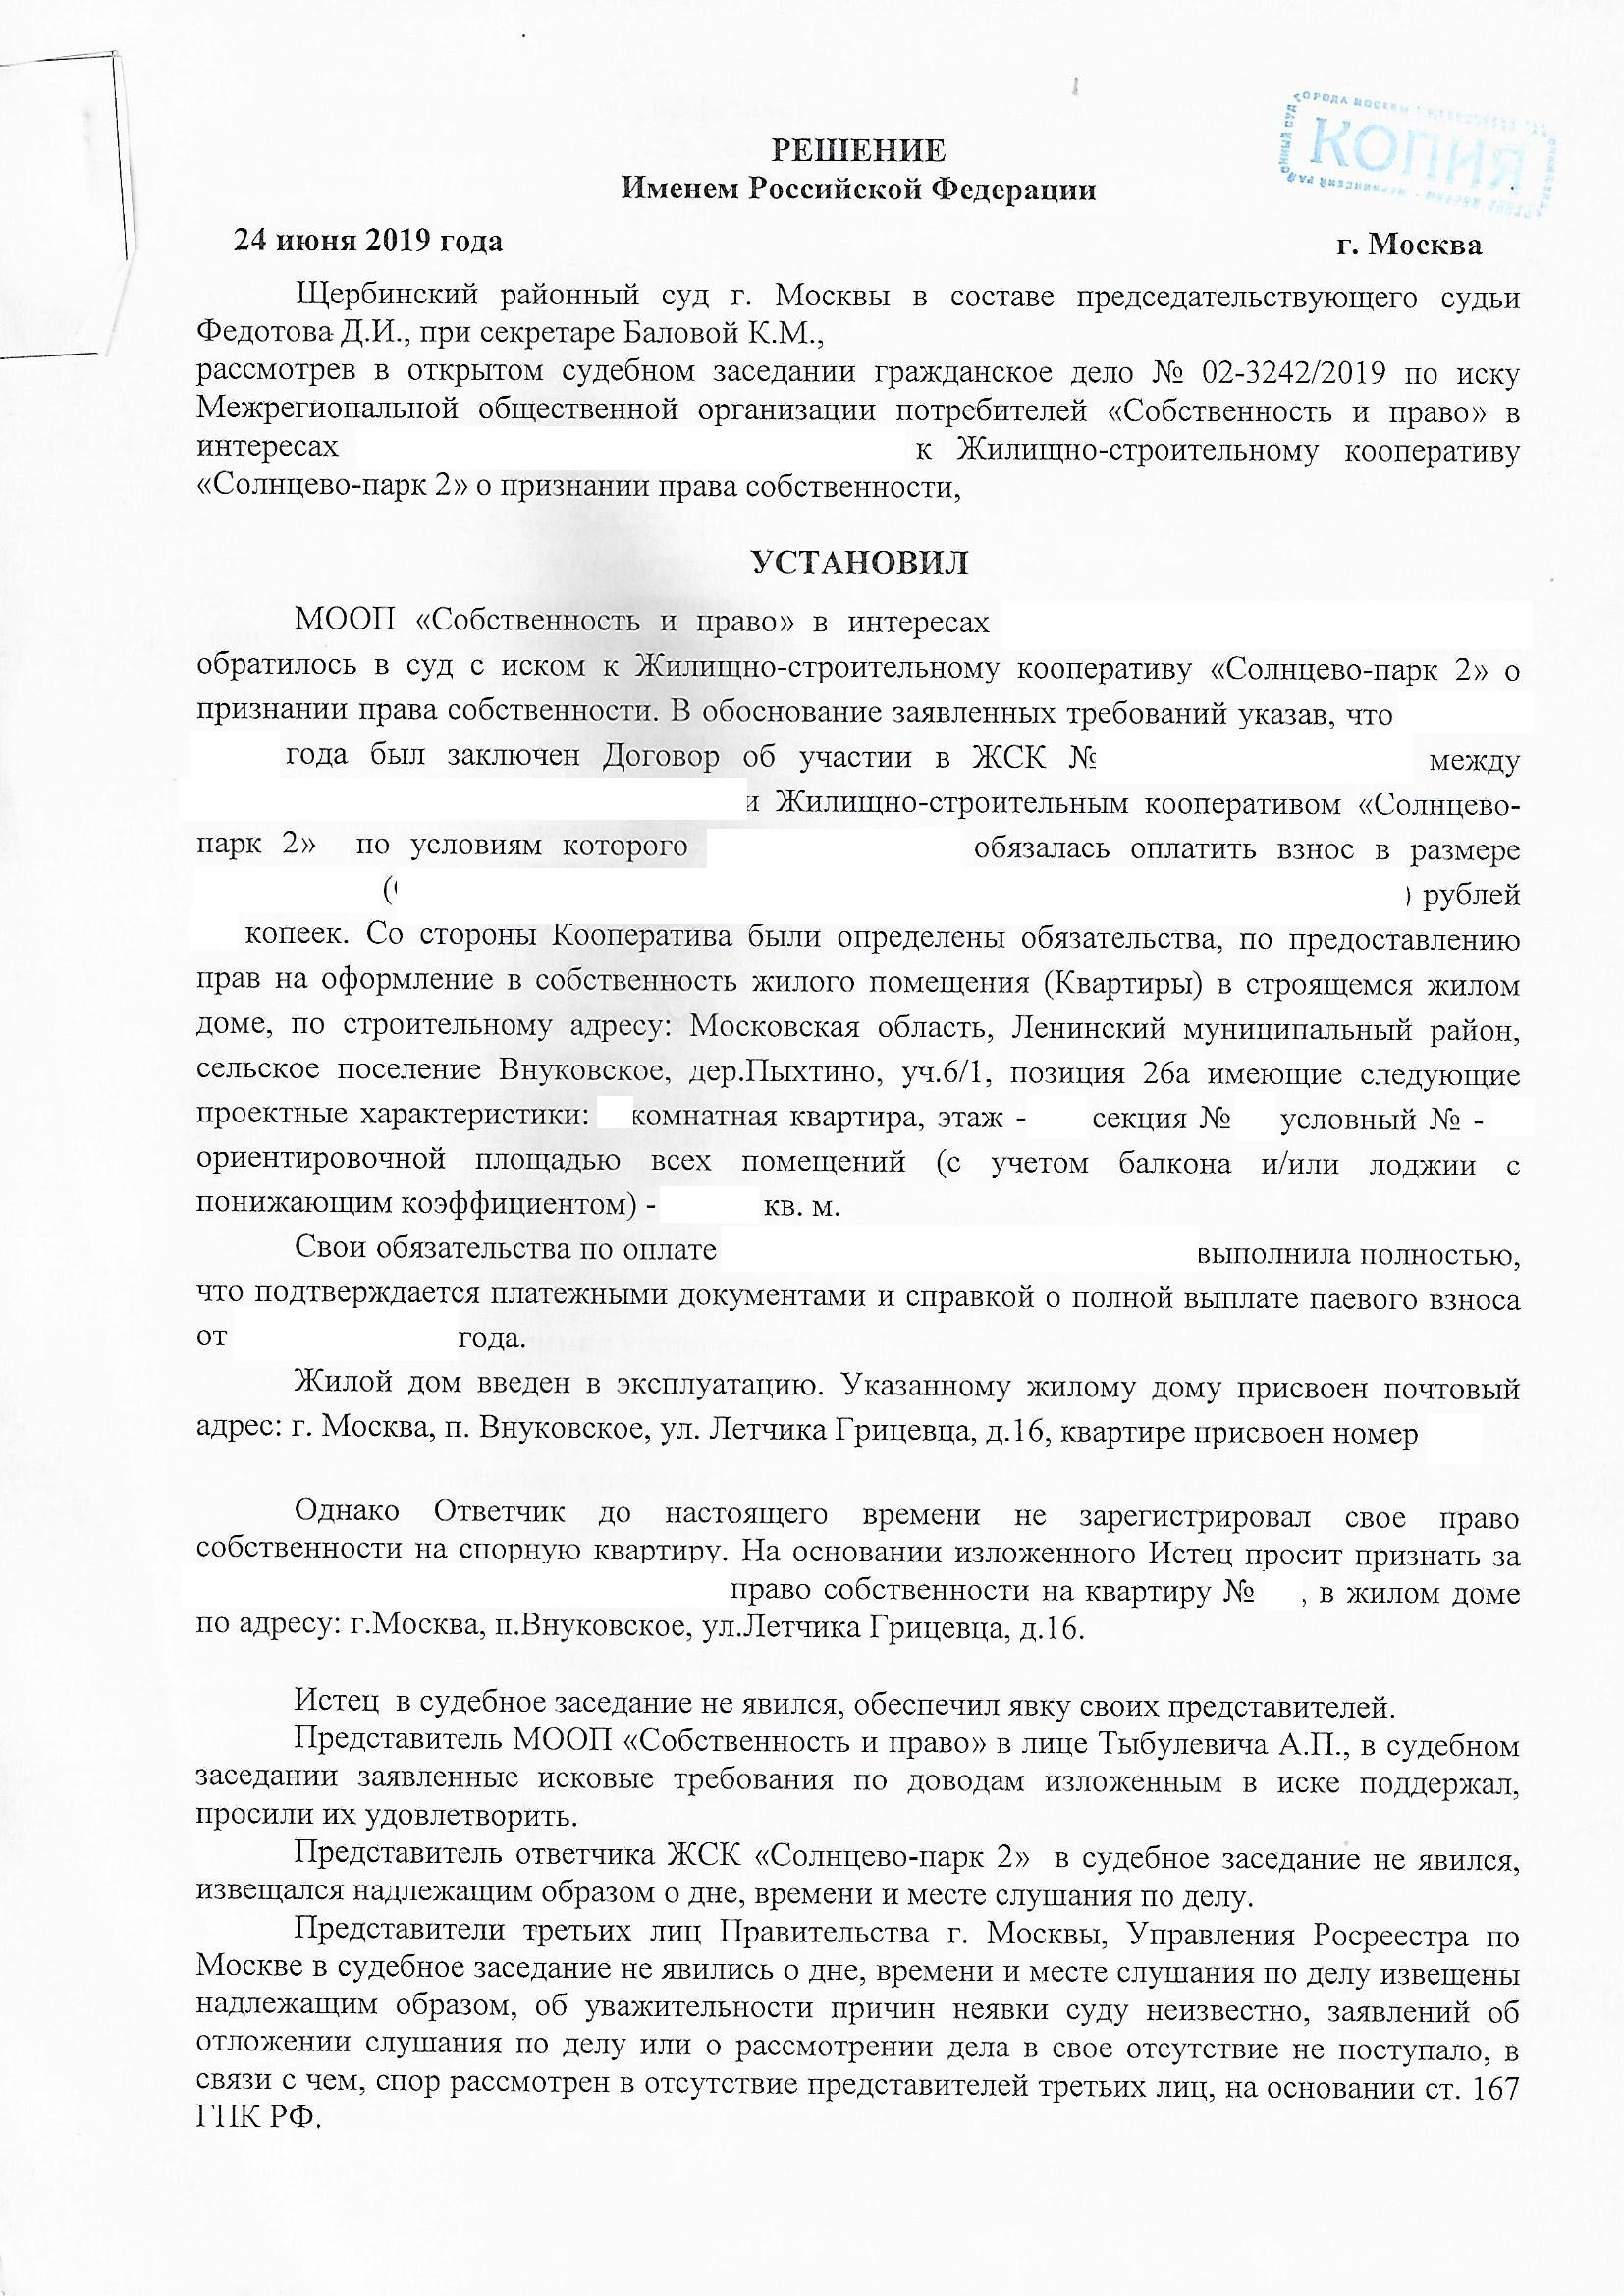 Судебное решение о признании права собственности ул. Летчика Грицевца д. 16